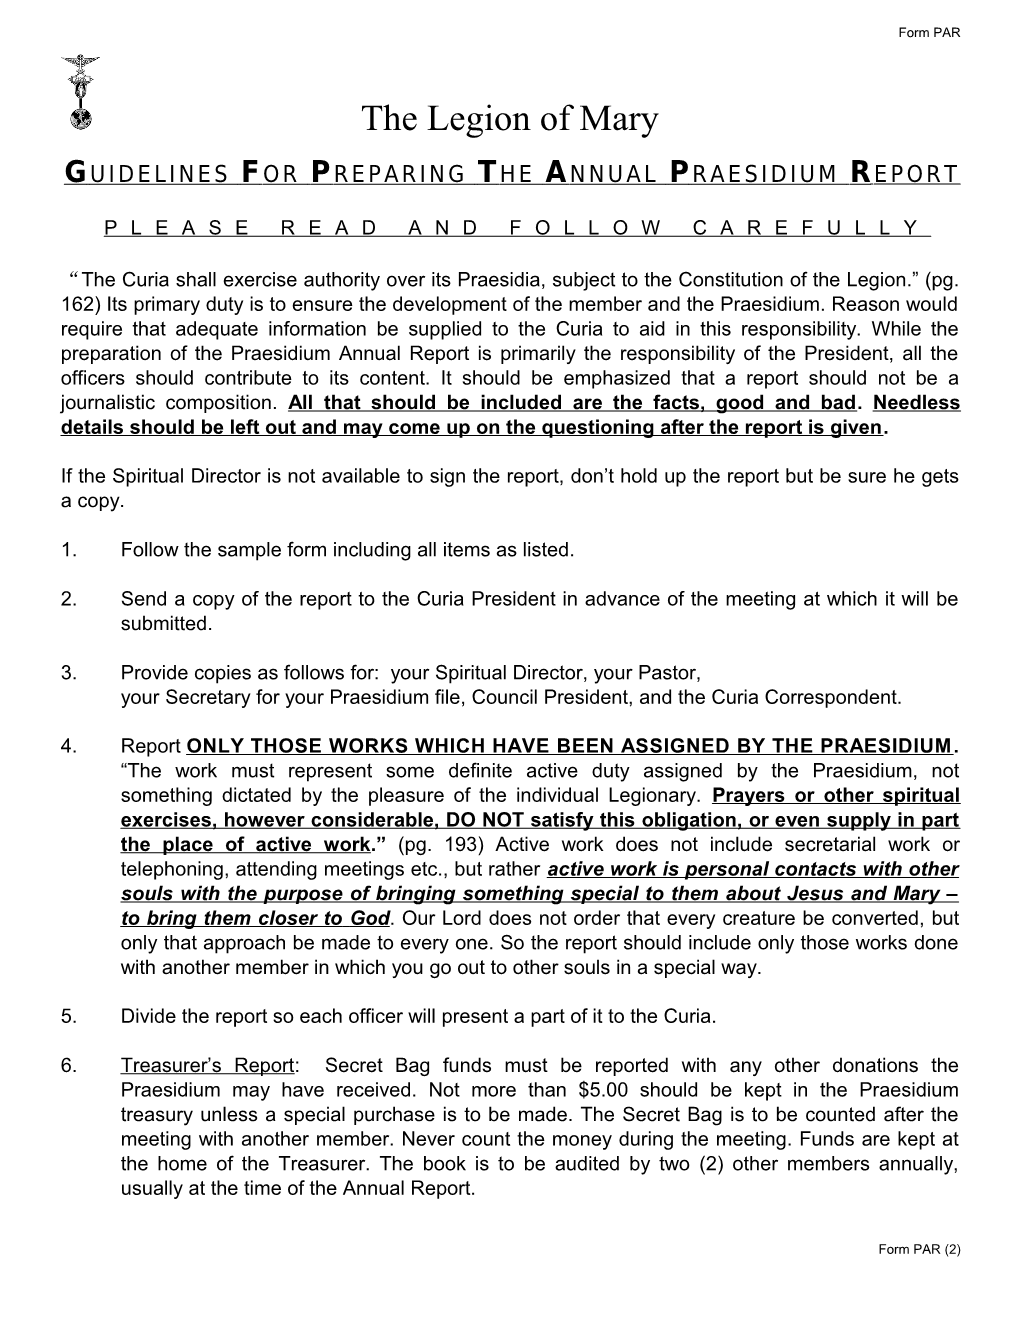 Guidelines for Preparing the Annual Praesidium R Eport